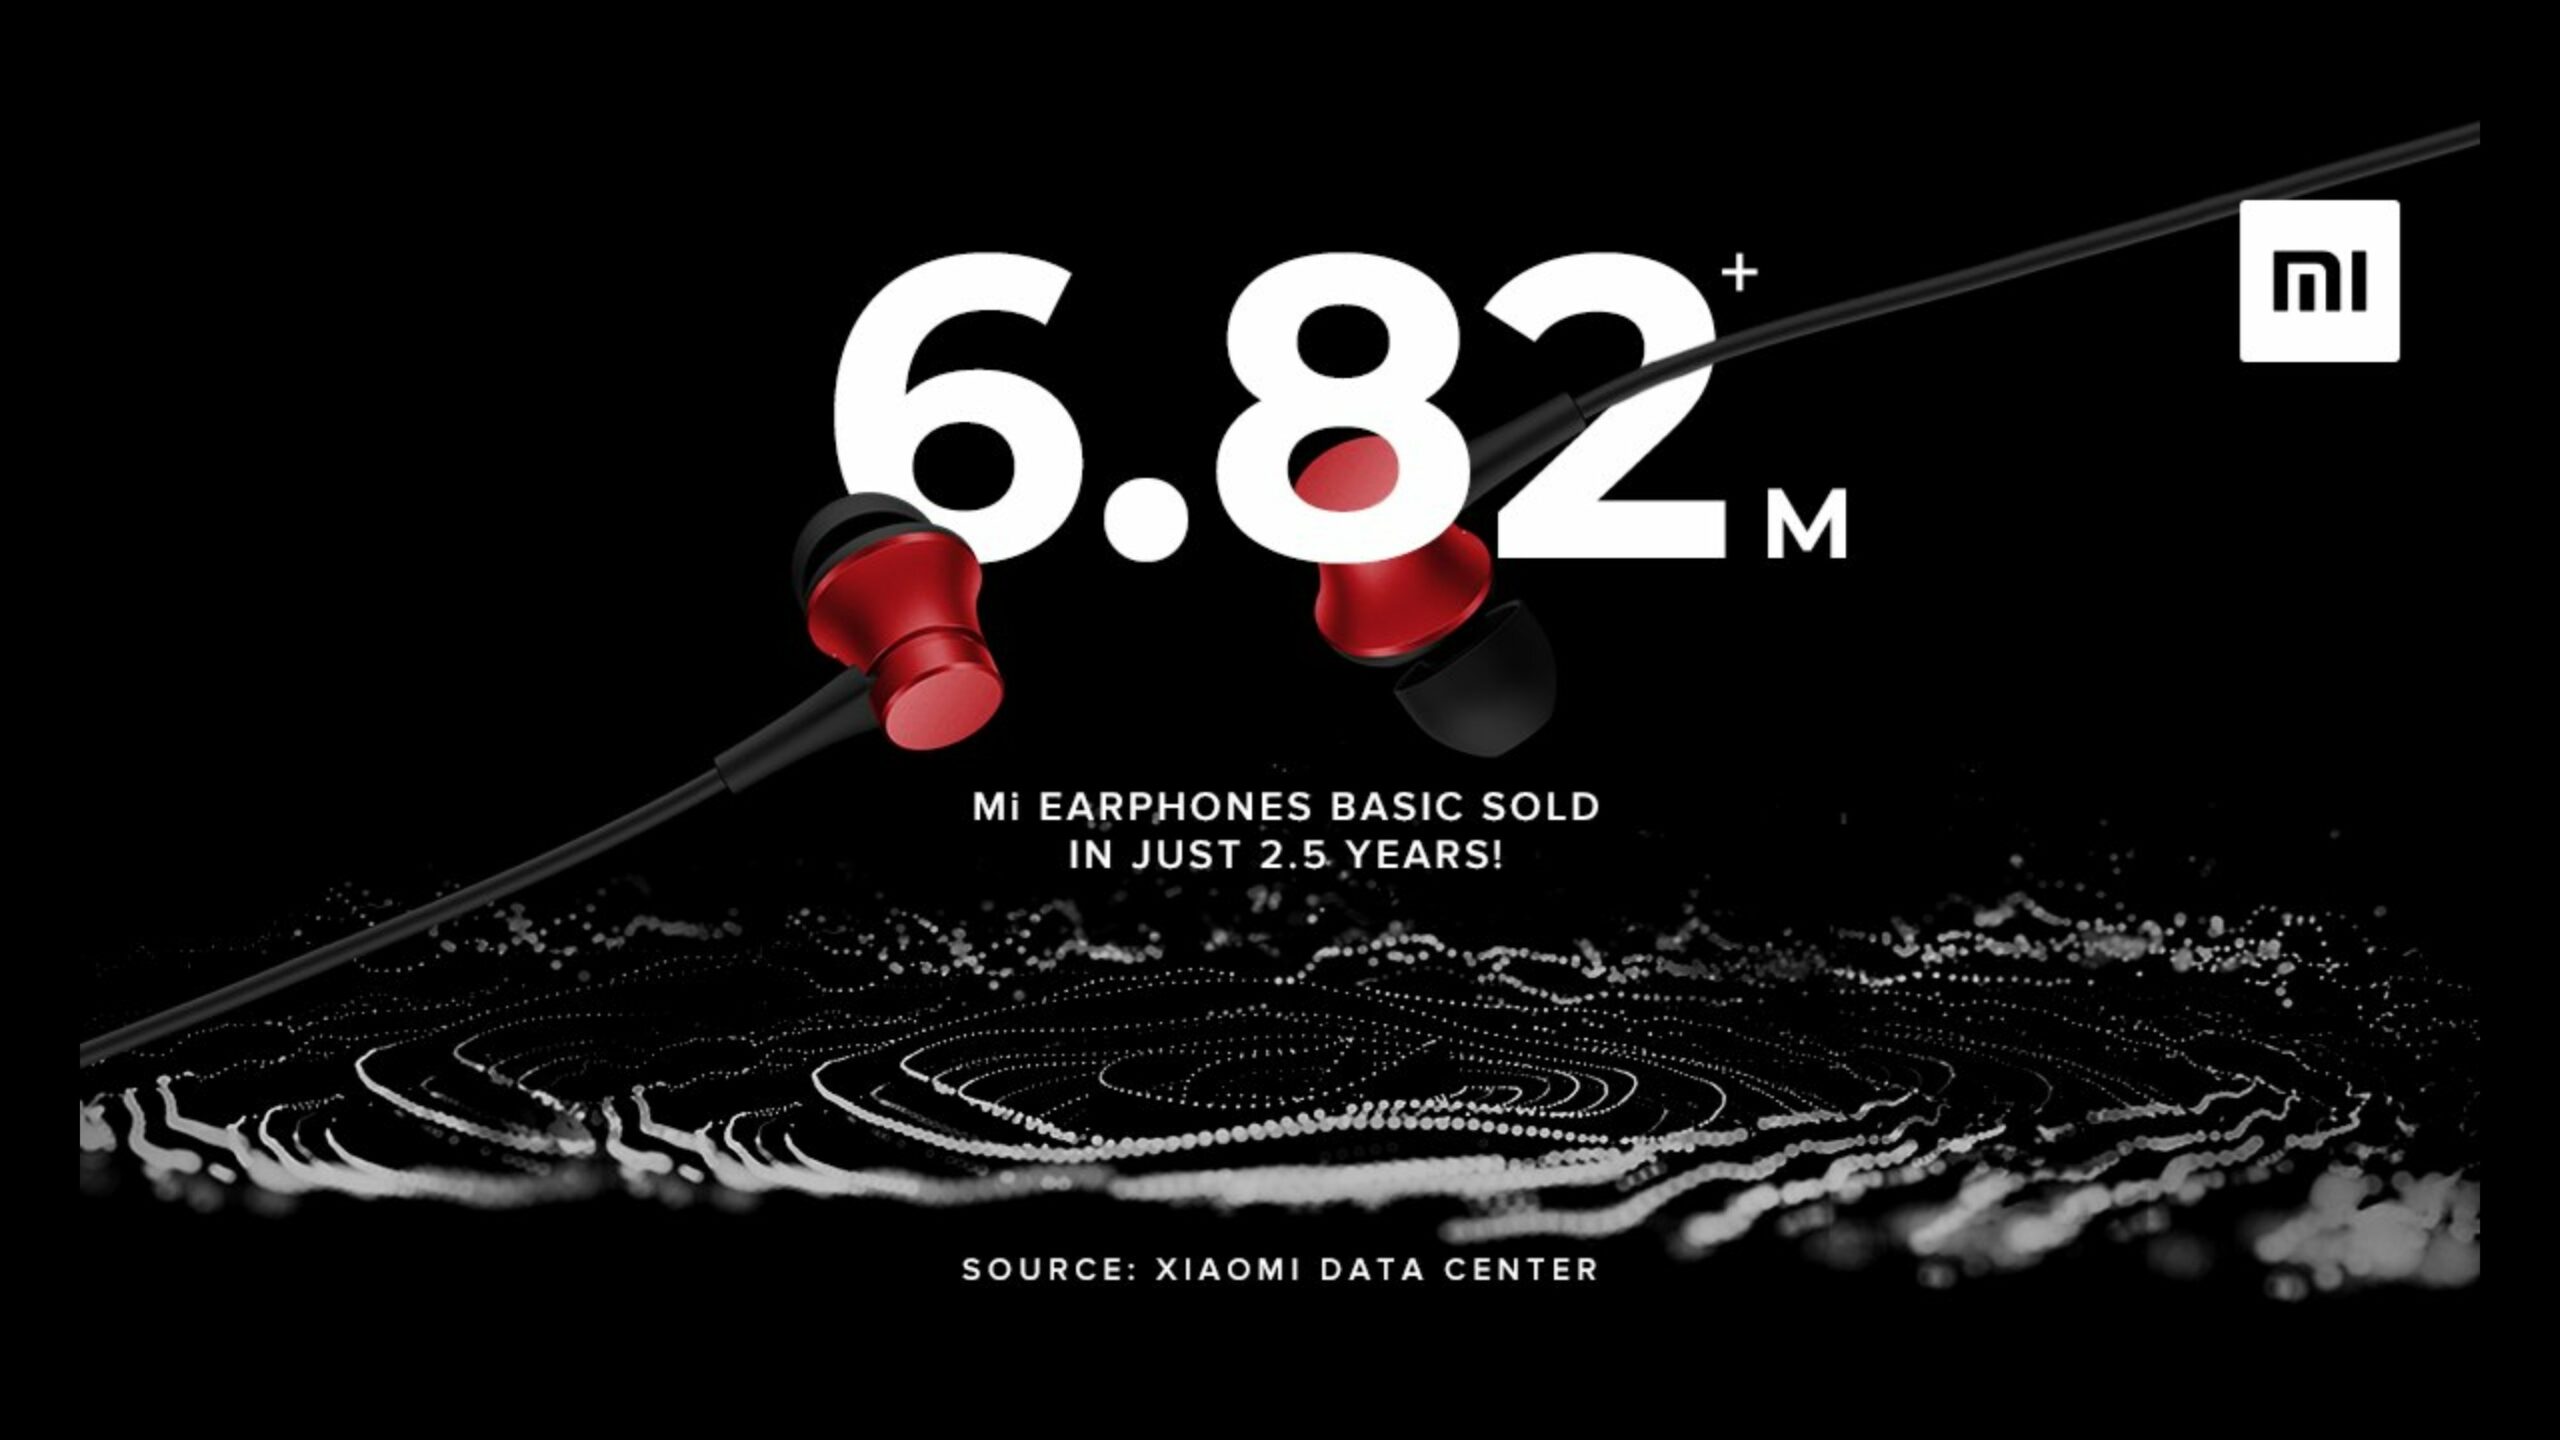 Xiaomi Mi Earphones Basic vairāk nekā 6.82 miljoni vienību, kas pārdotas 2.5 gadu laikā